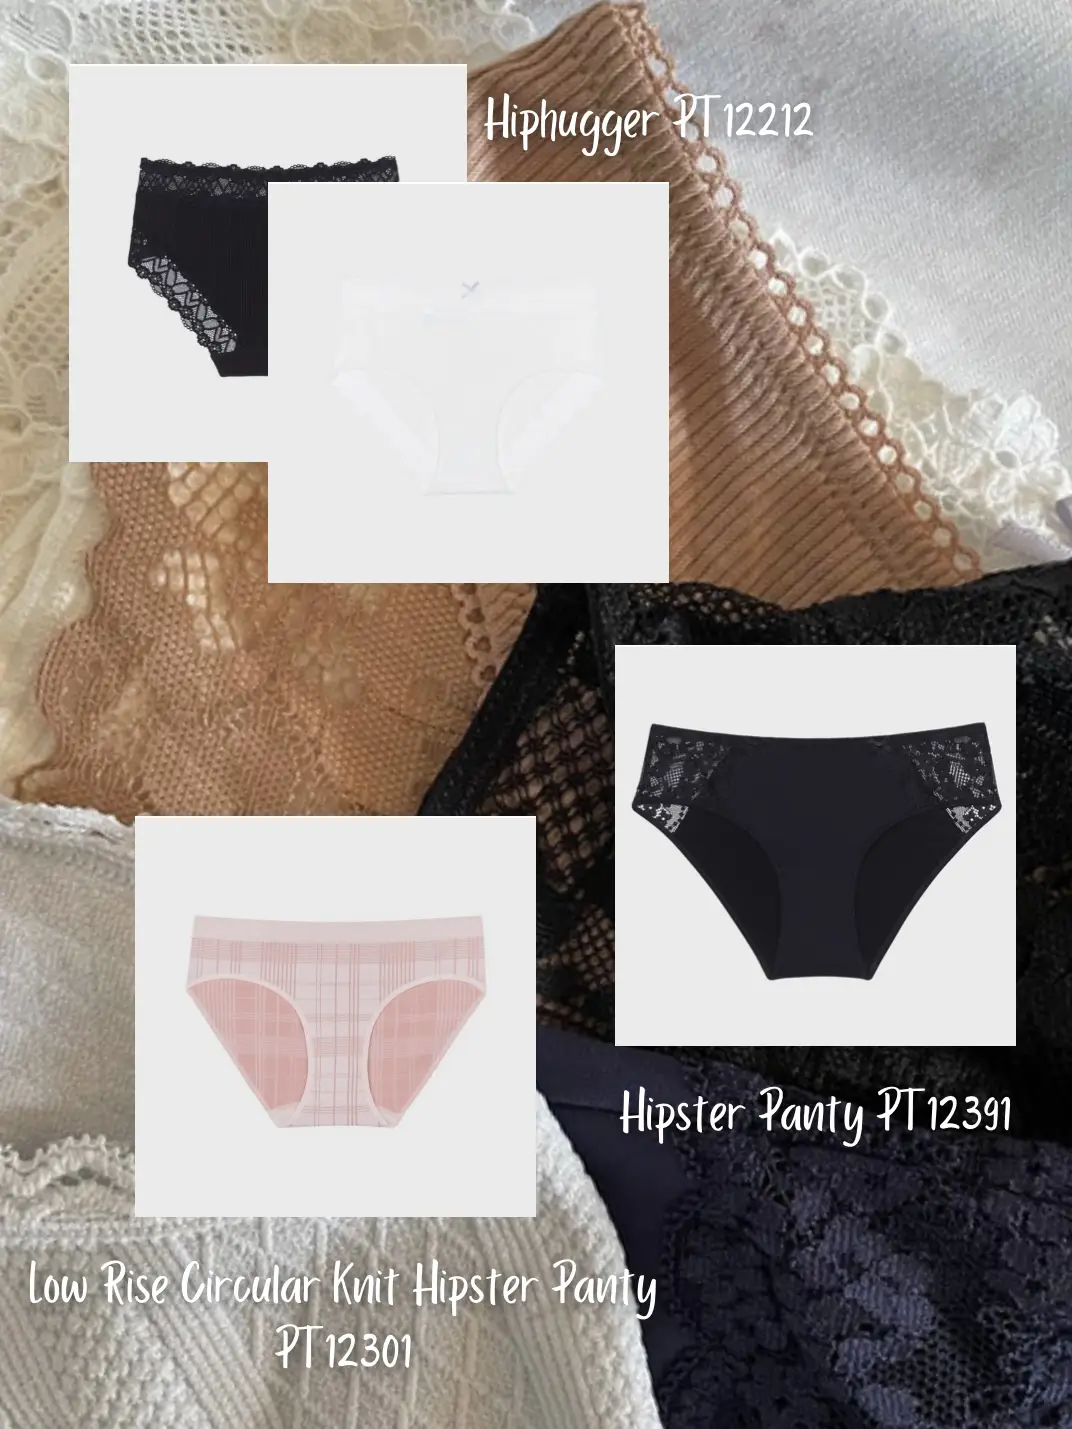 N-Gal Panties Lace Trim Edge Low Waist Underwear Lingerie Thong